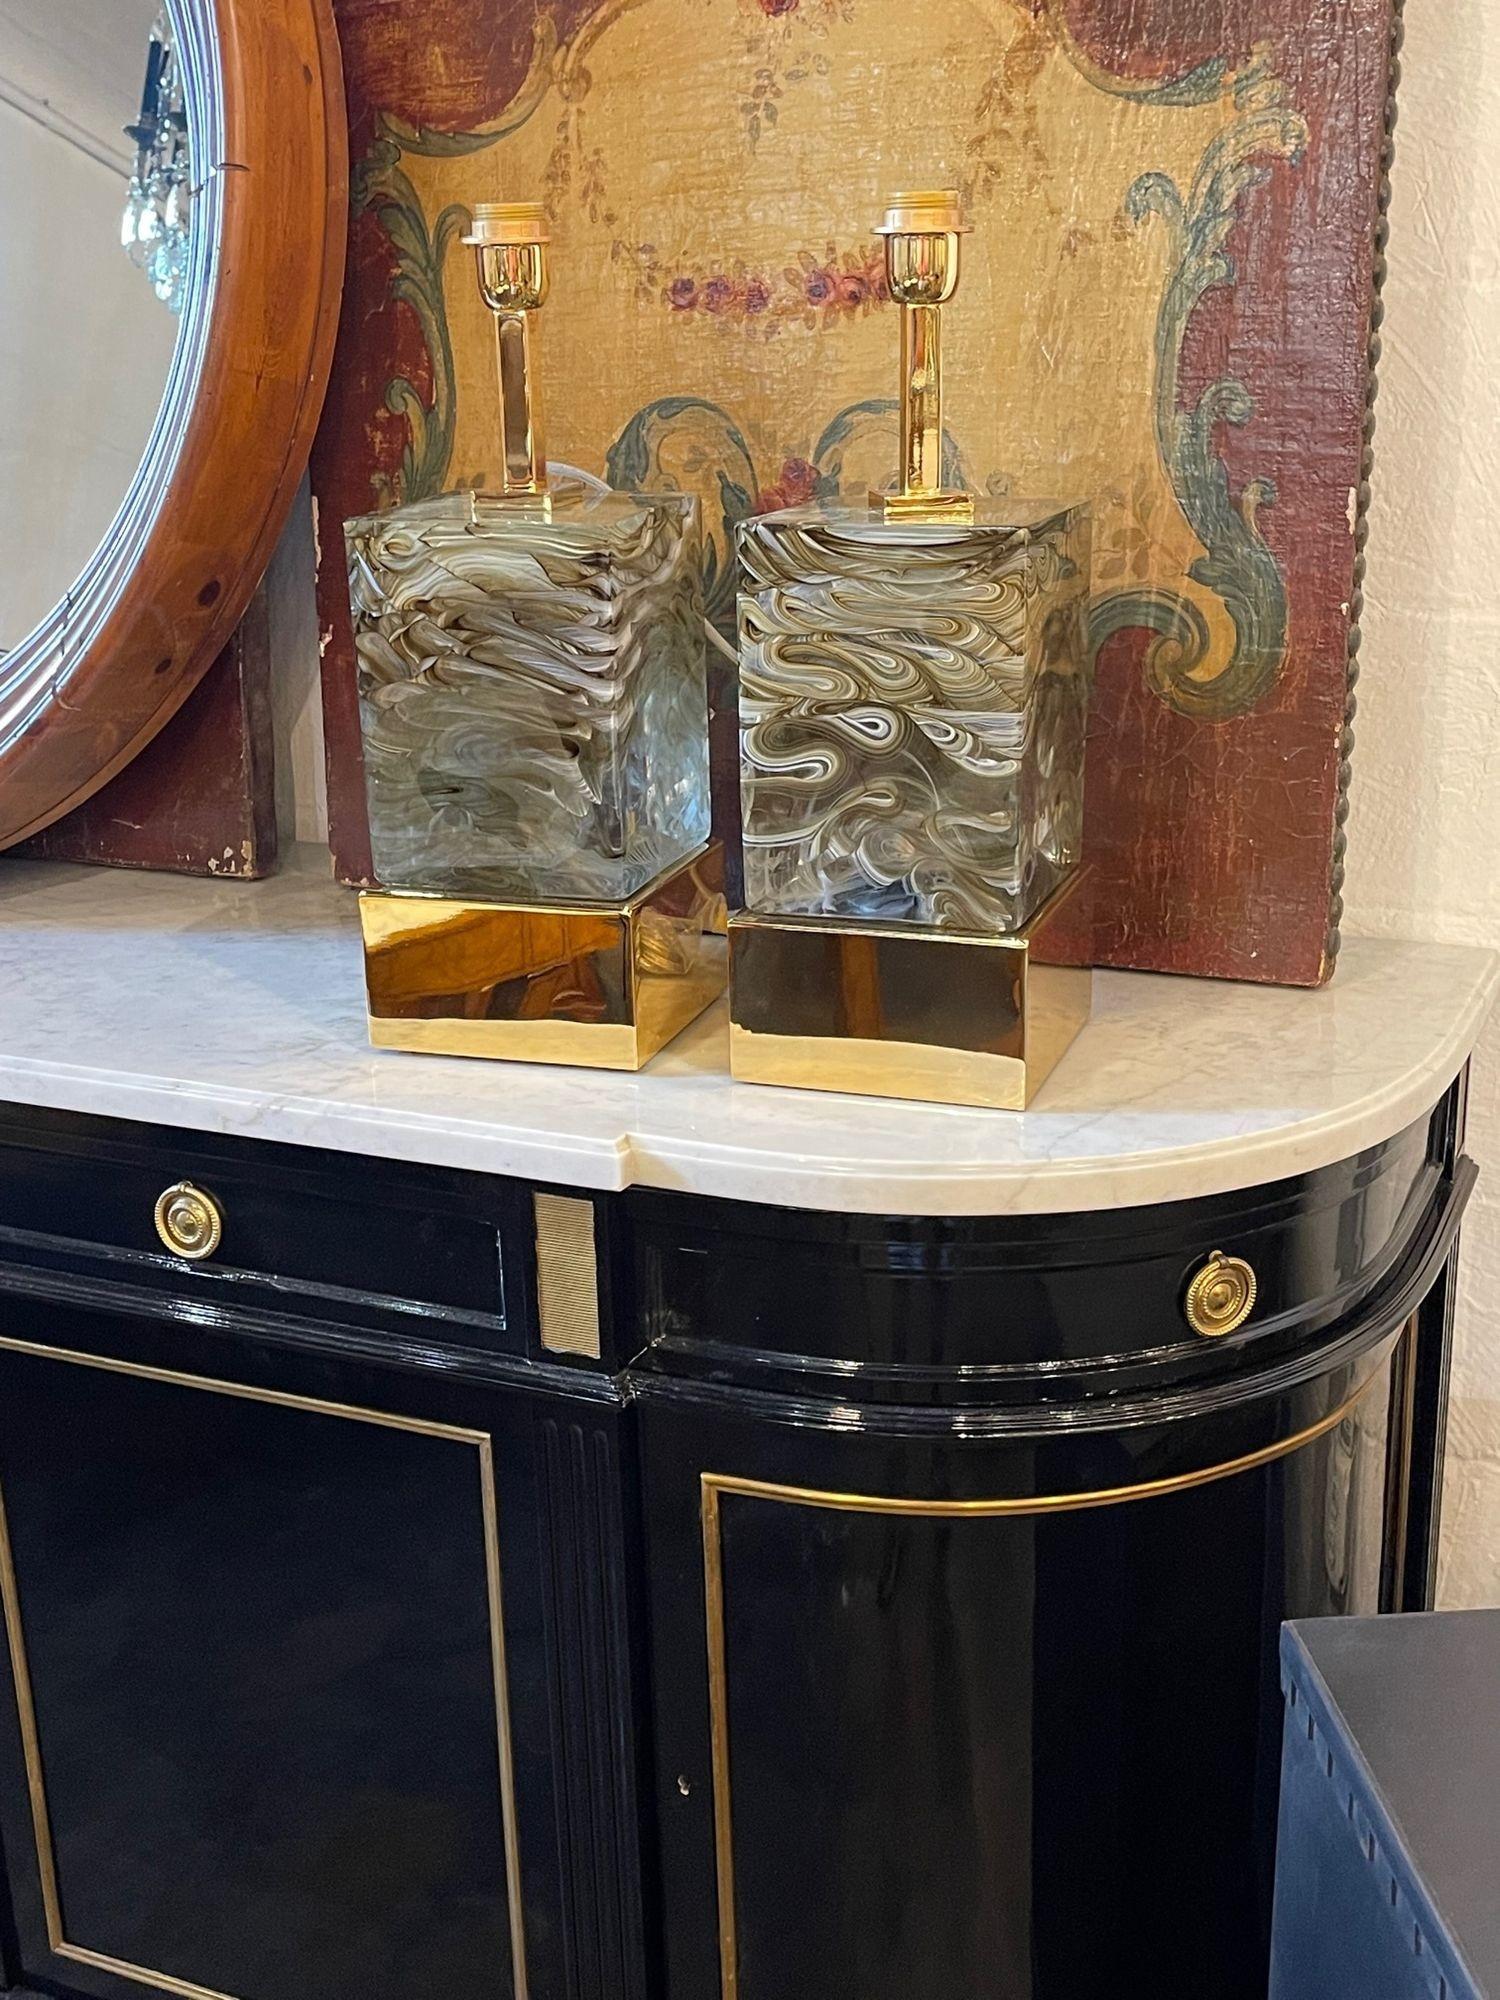 Paire élégante de lampes modernes en verre de Murano et laiton. Pièce de verre très lourde avec des couleurs brunes et blanches. Tant de profondeur et de mouvement dans cette pièce. Incroyable !